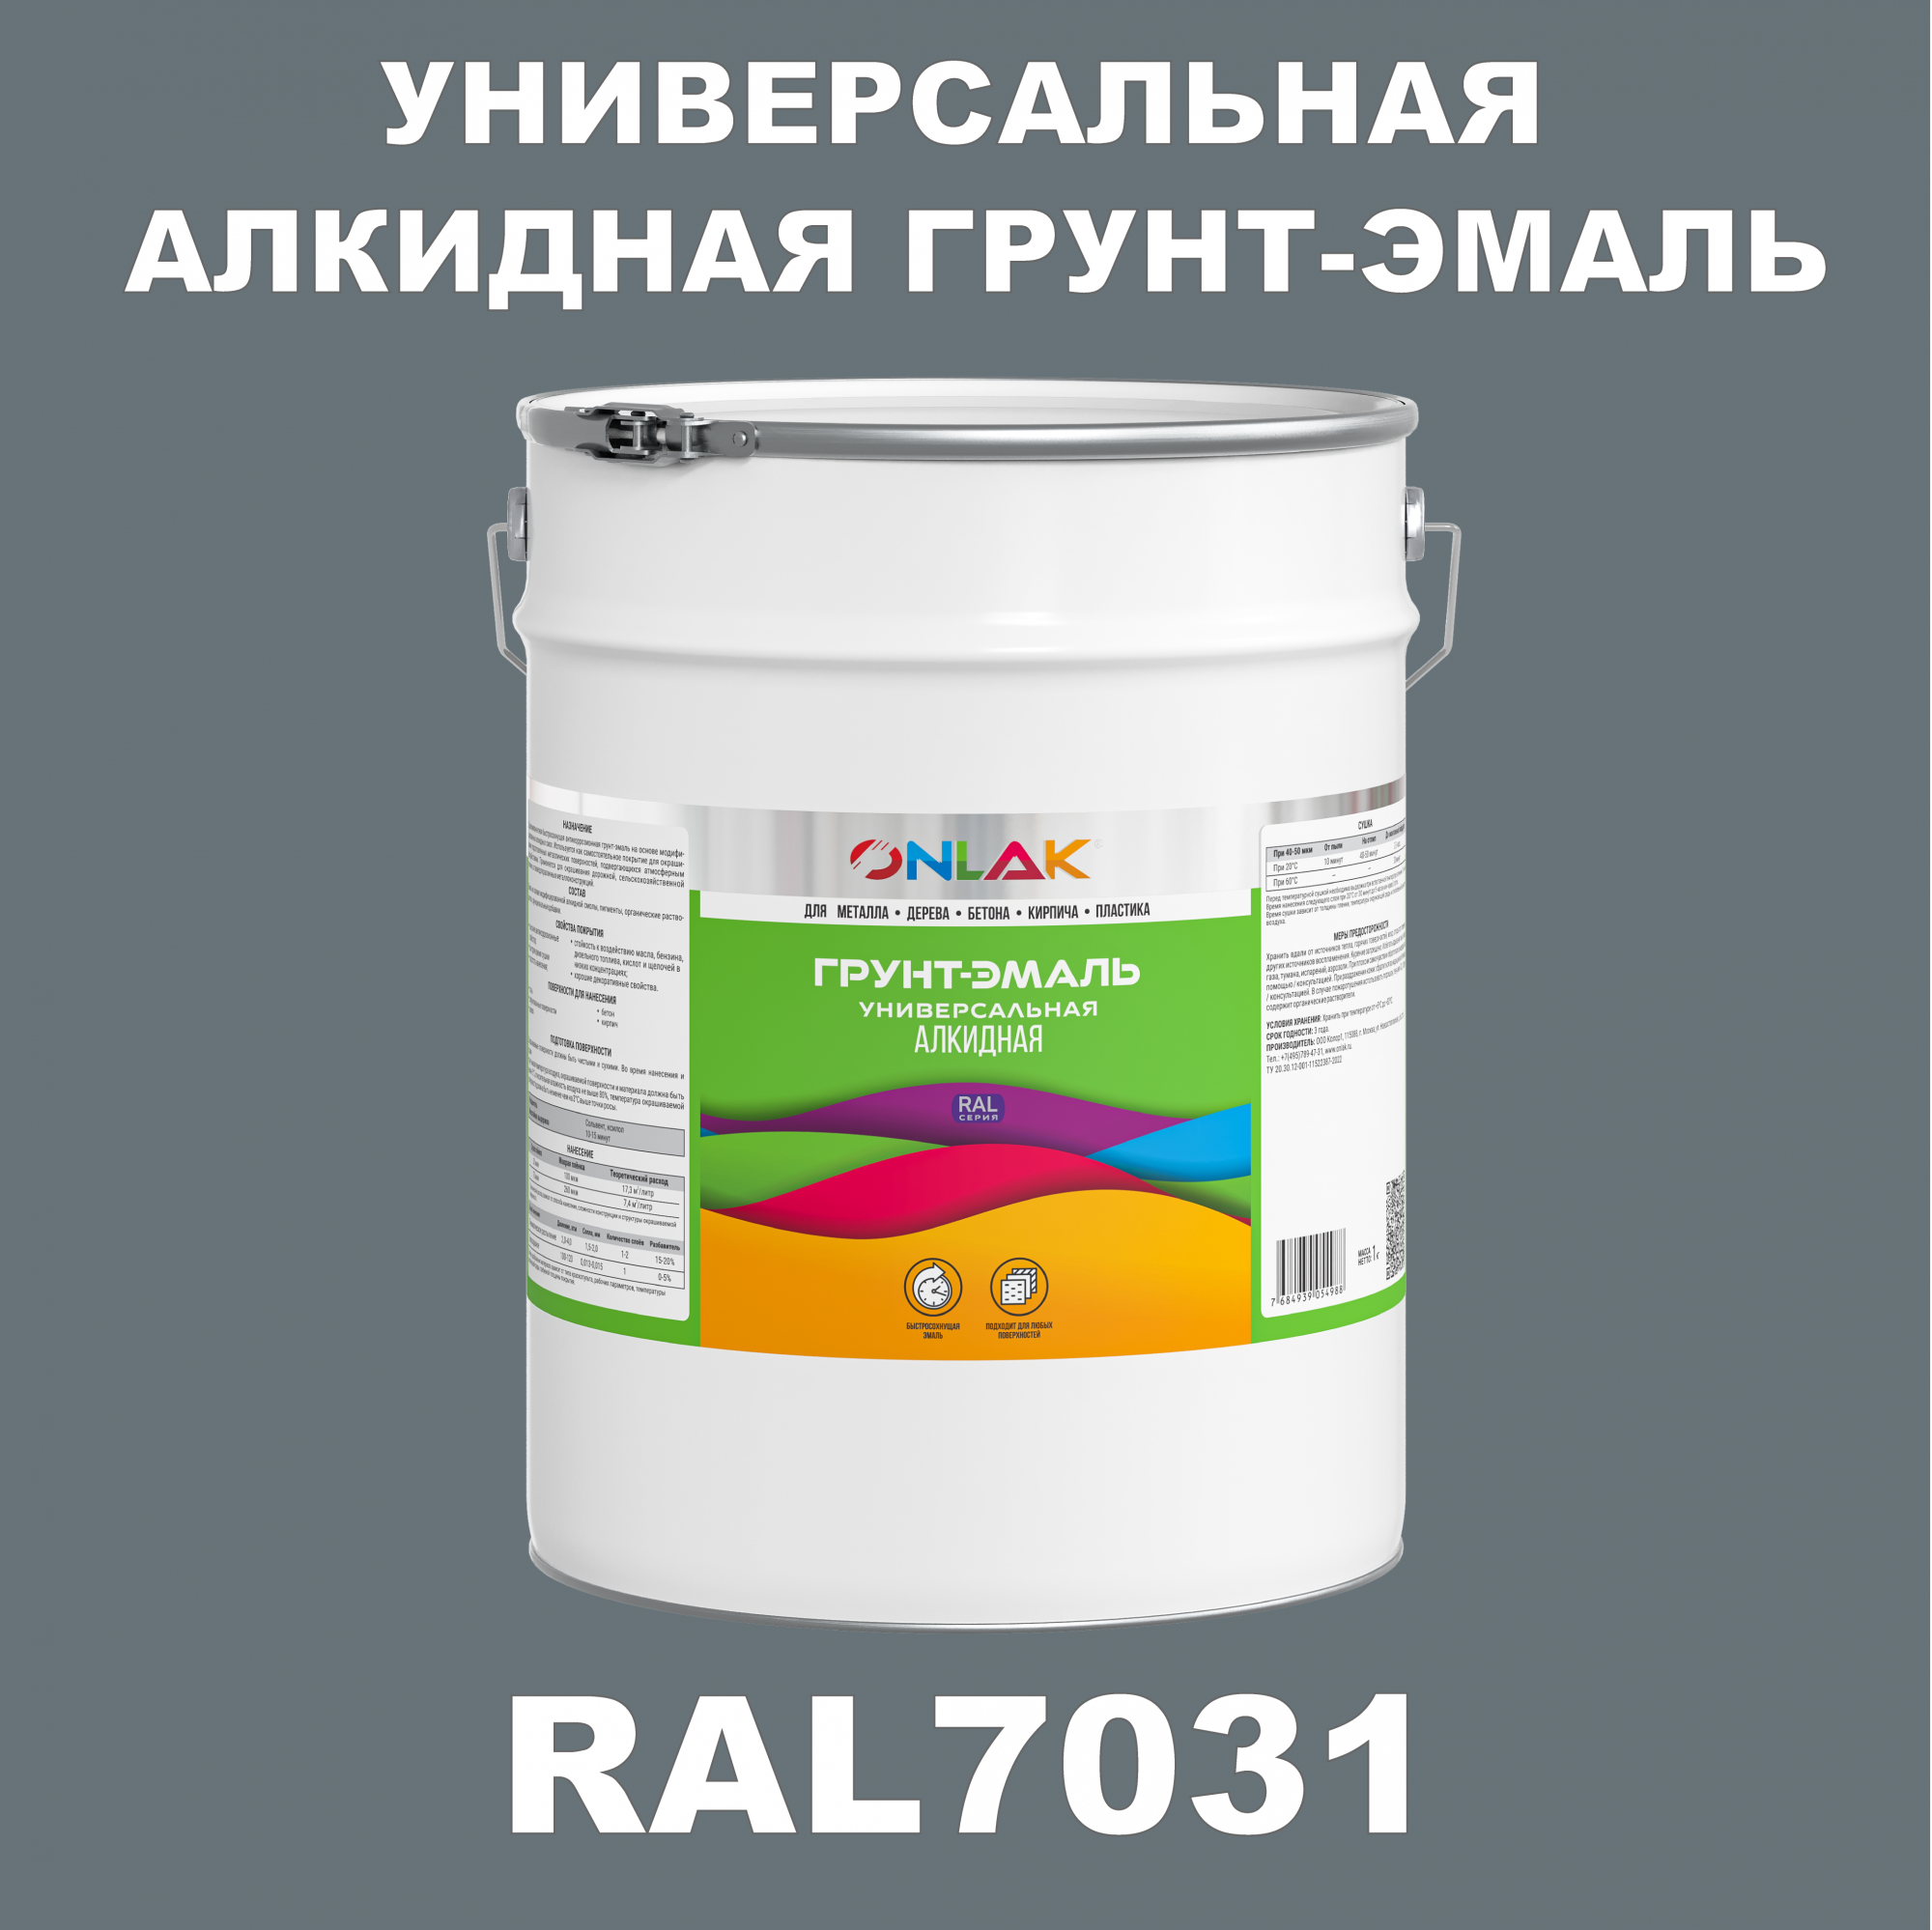 Грунт-эмаль ONLAK 1К RAL7031 антикоррозионная алкидная по металлу по ржавчине 20 кг